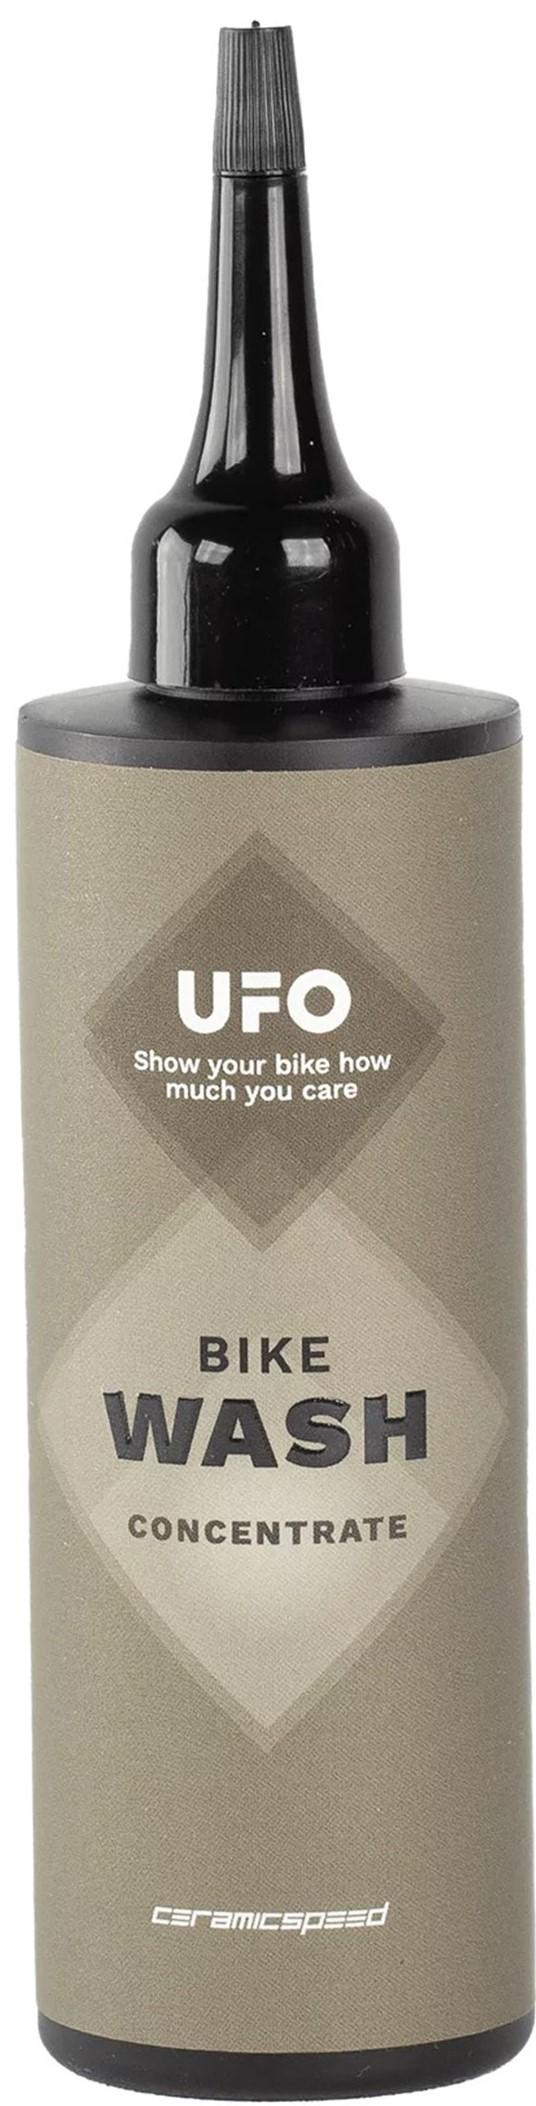 Ceramicspeed Ufo Bike Wash Refill - Black